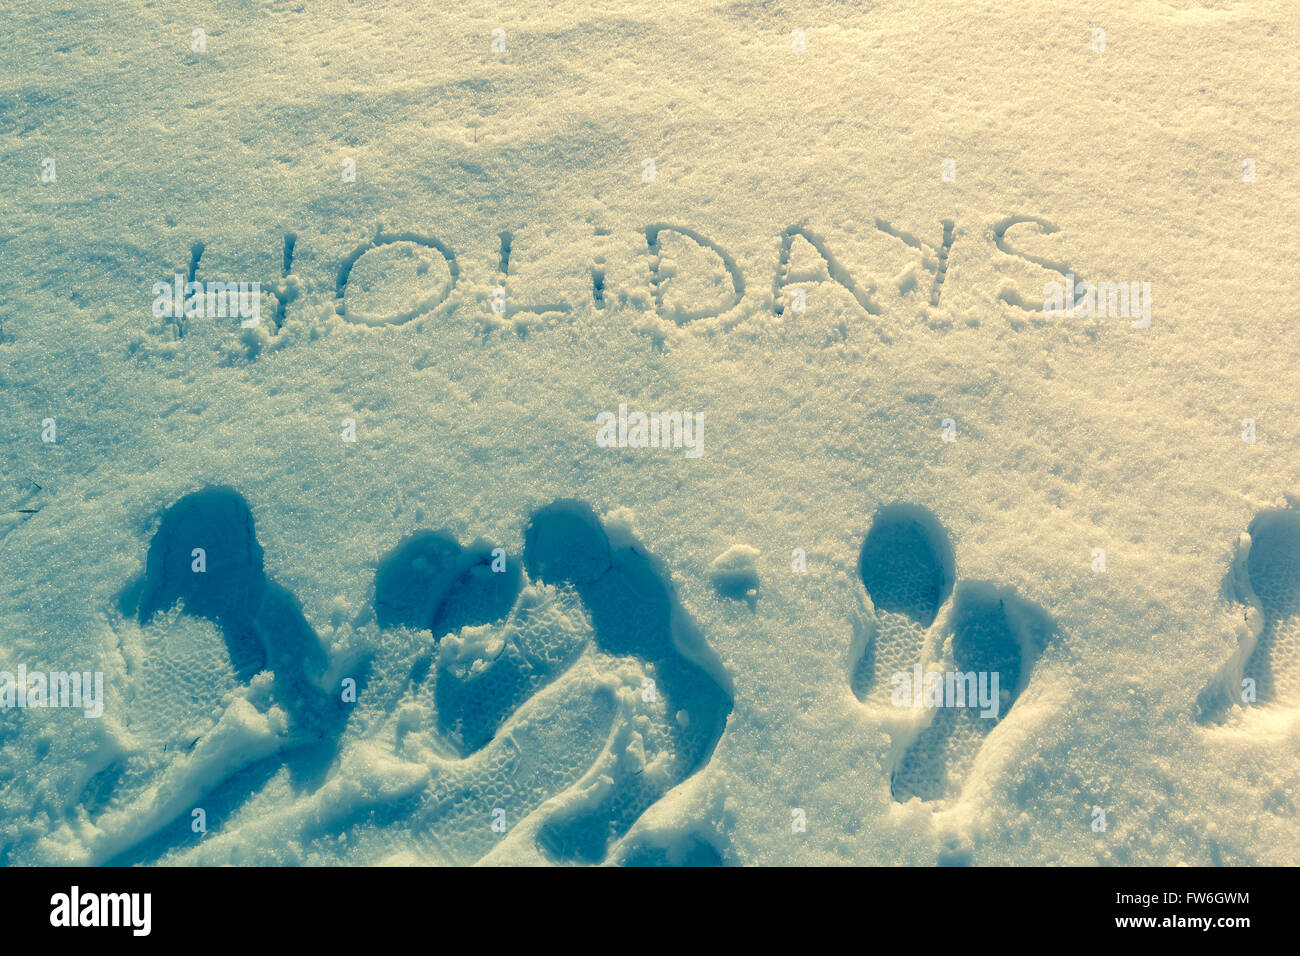 Geschriebene Wörter Urlaub auf einem Schneefeld Stockfoto